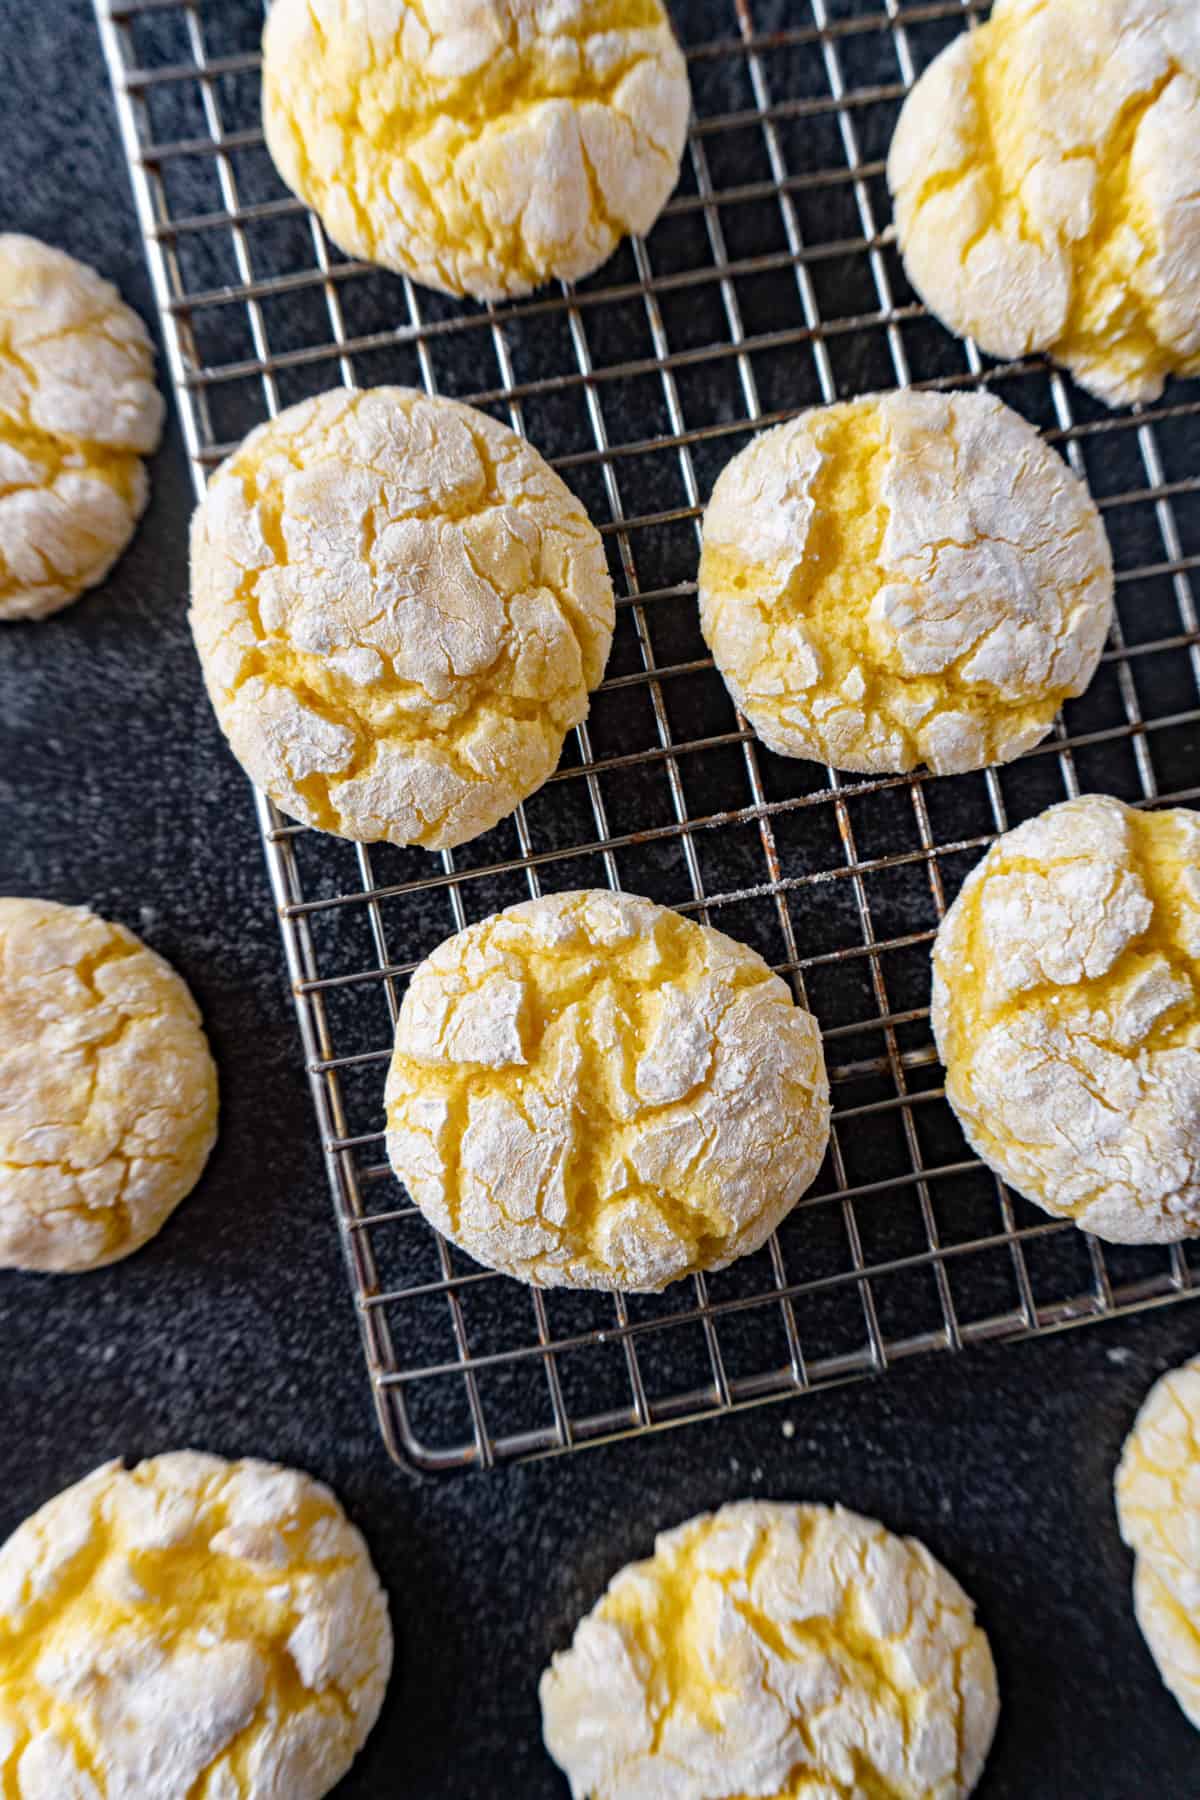 Lemon Crinkle cookies cooling on wire rack